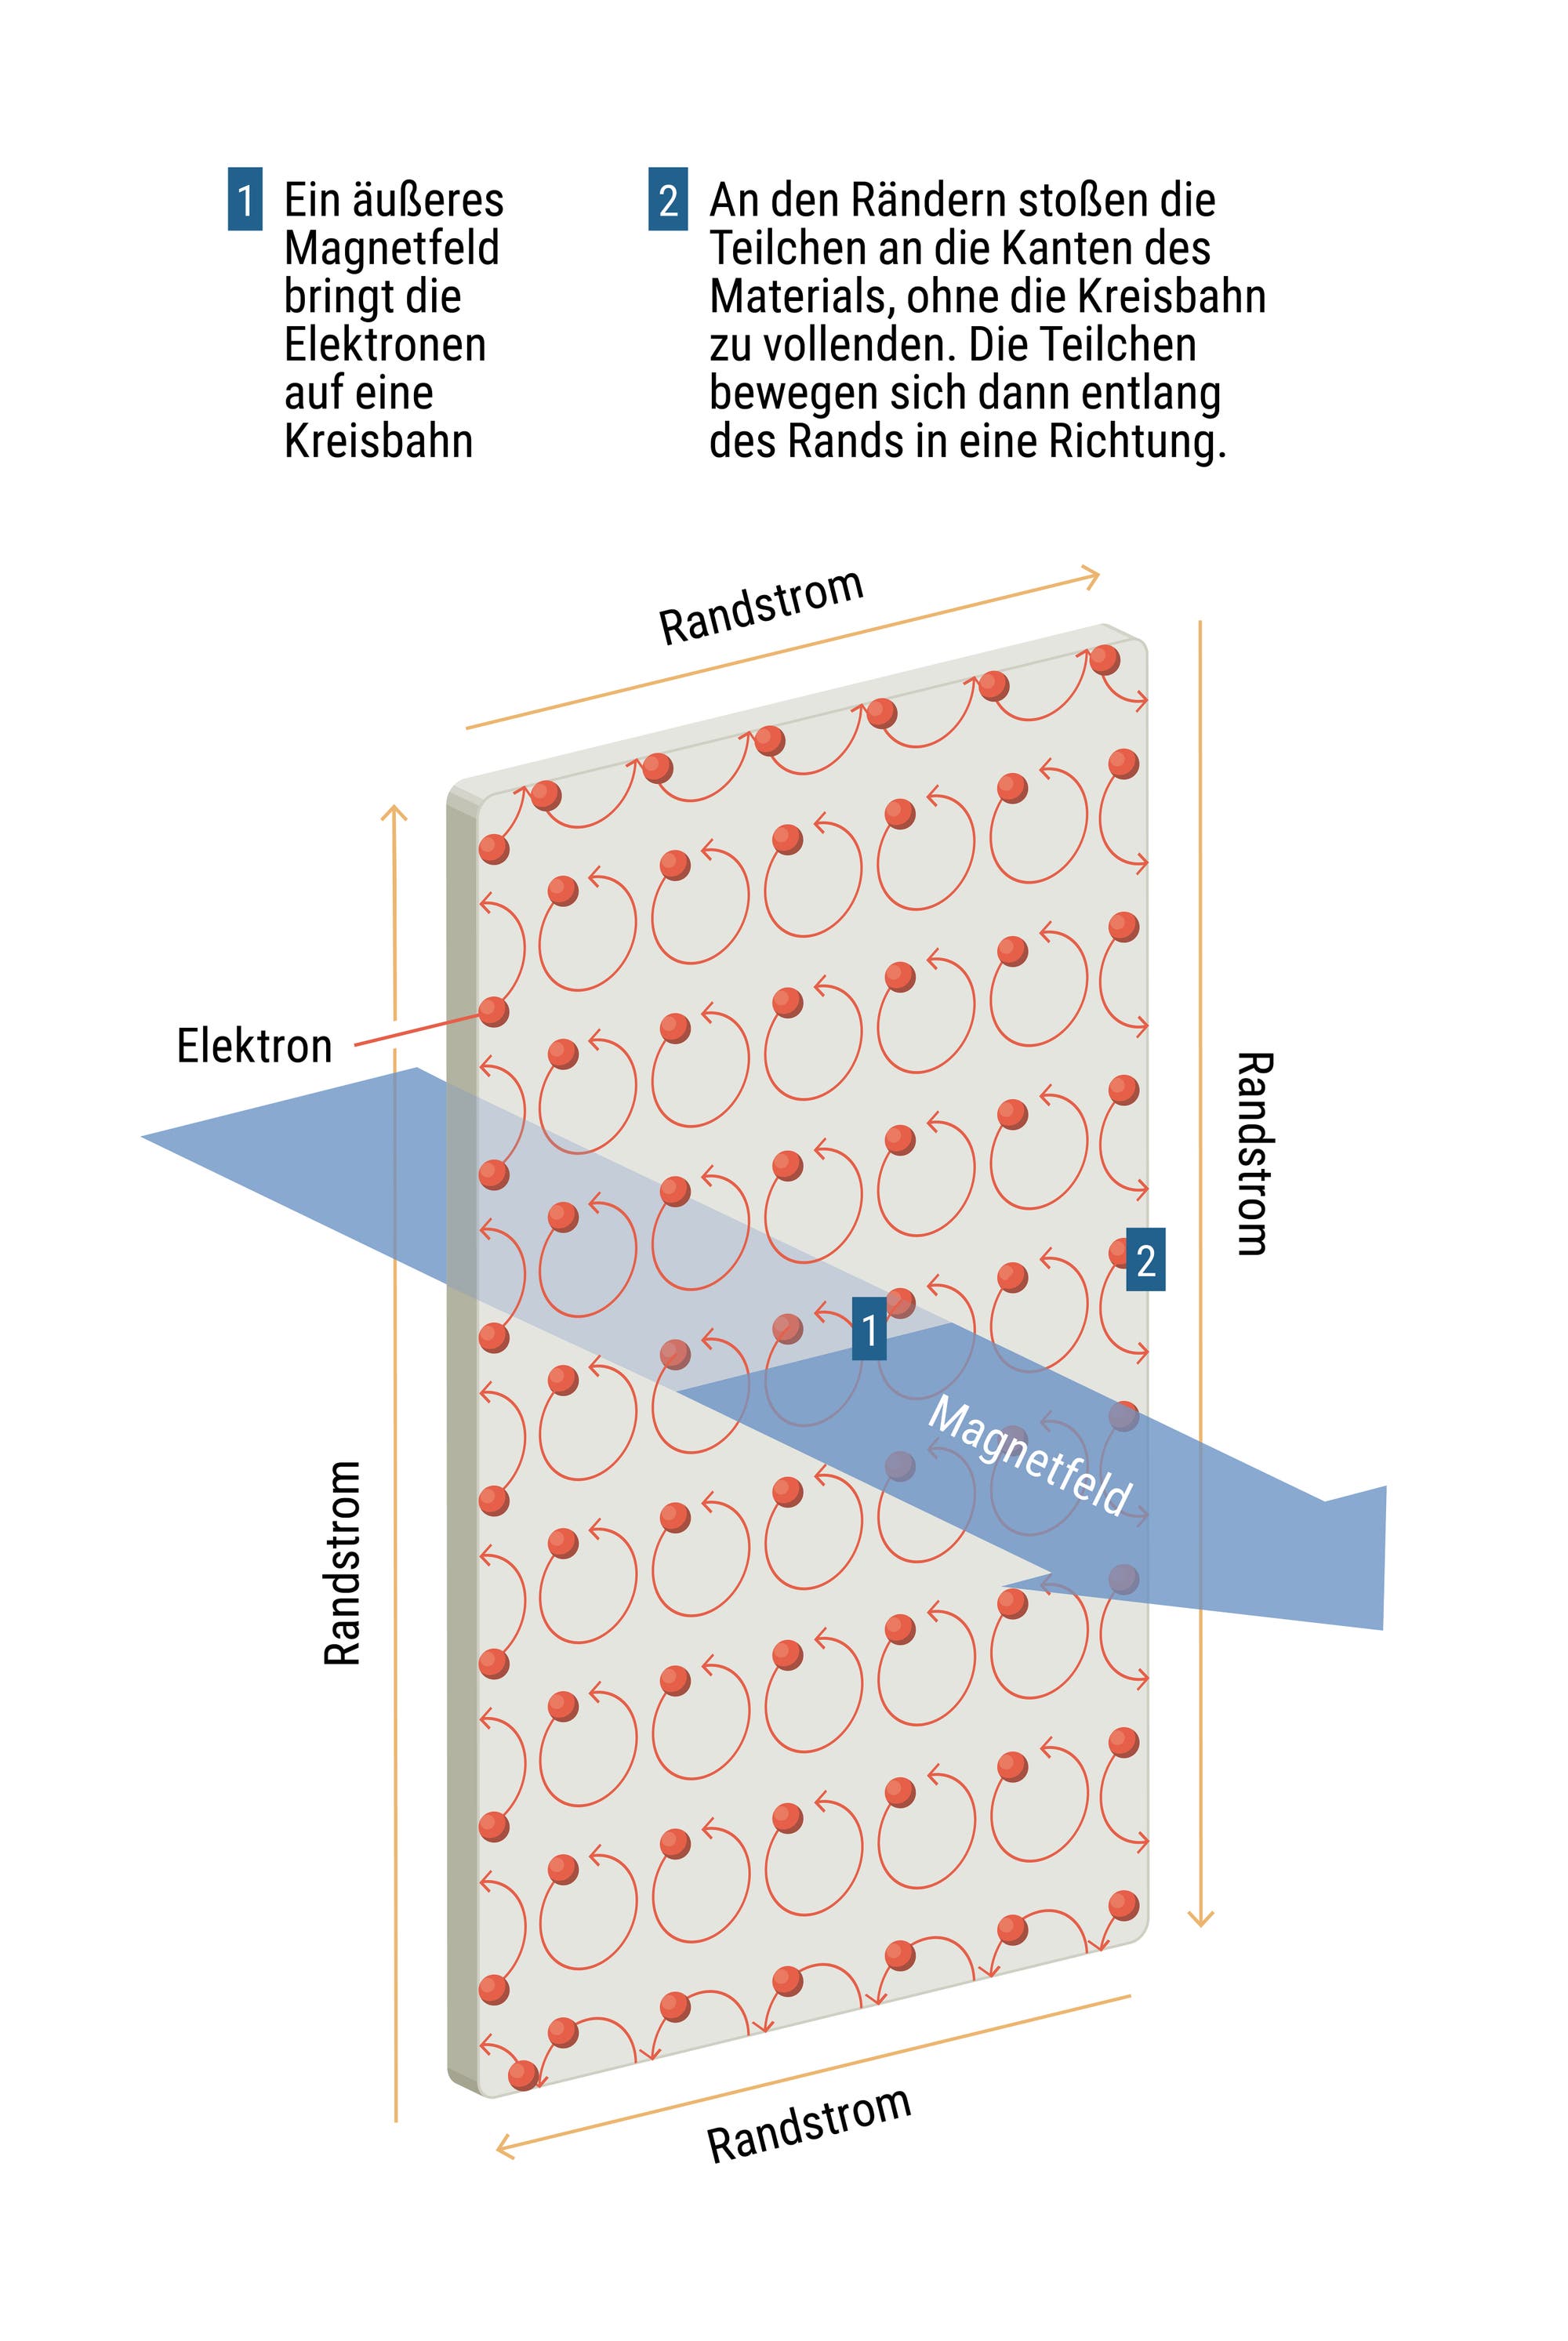 Eine Infografik zu topologischen Isolatoren, die zeigt, wie sich die Elektronen unter dem Einfluss eines Magnetfelds auf Kreisbahnen bewegen.